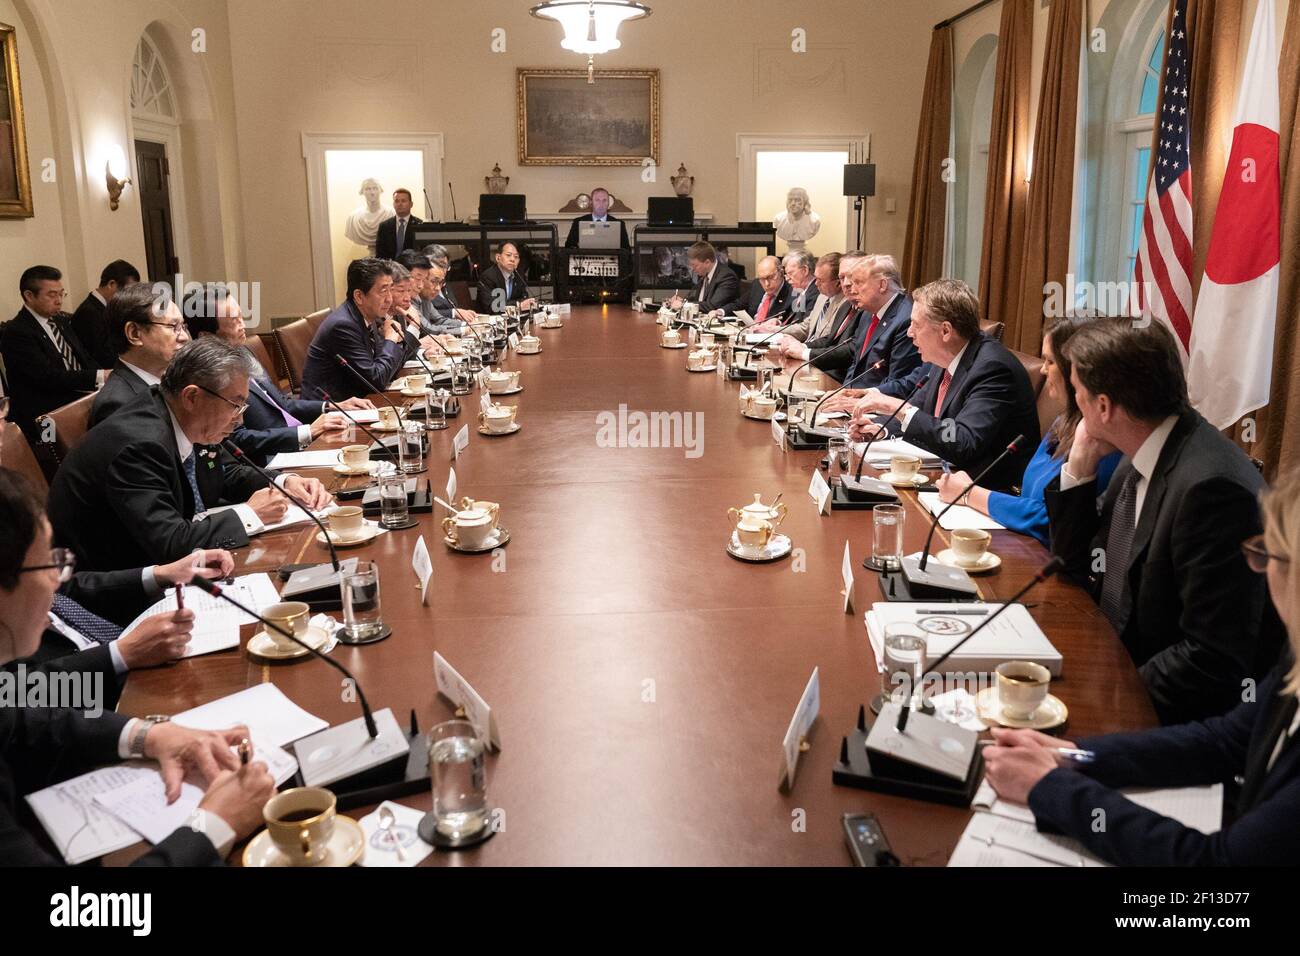 Le président Donald Trump rencontre le Premier ministre japonais Shinzo Abe lors d'une réunion bilatérale élargie vendredi 26 2019 avril dans la salle du Cabinet de la Maison Blanche. Banque D'Images